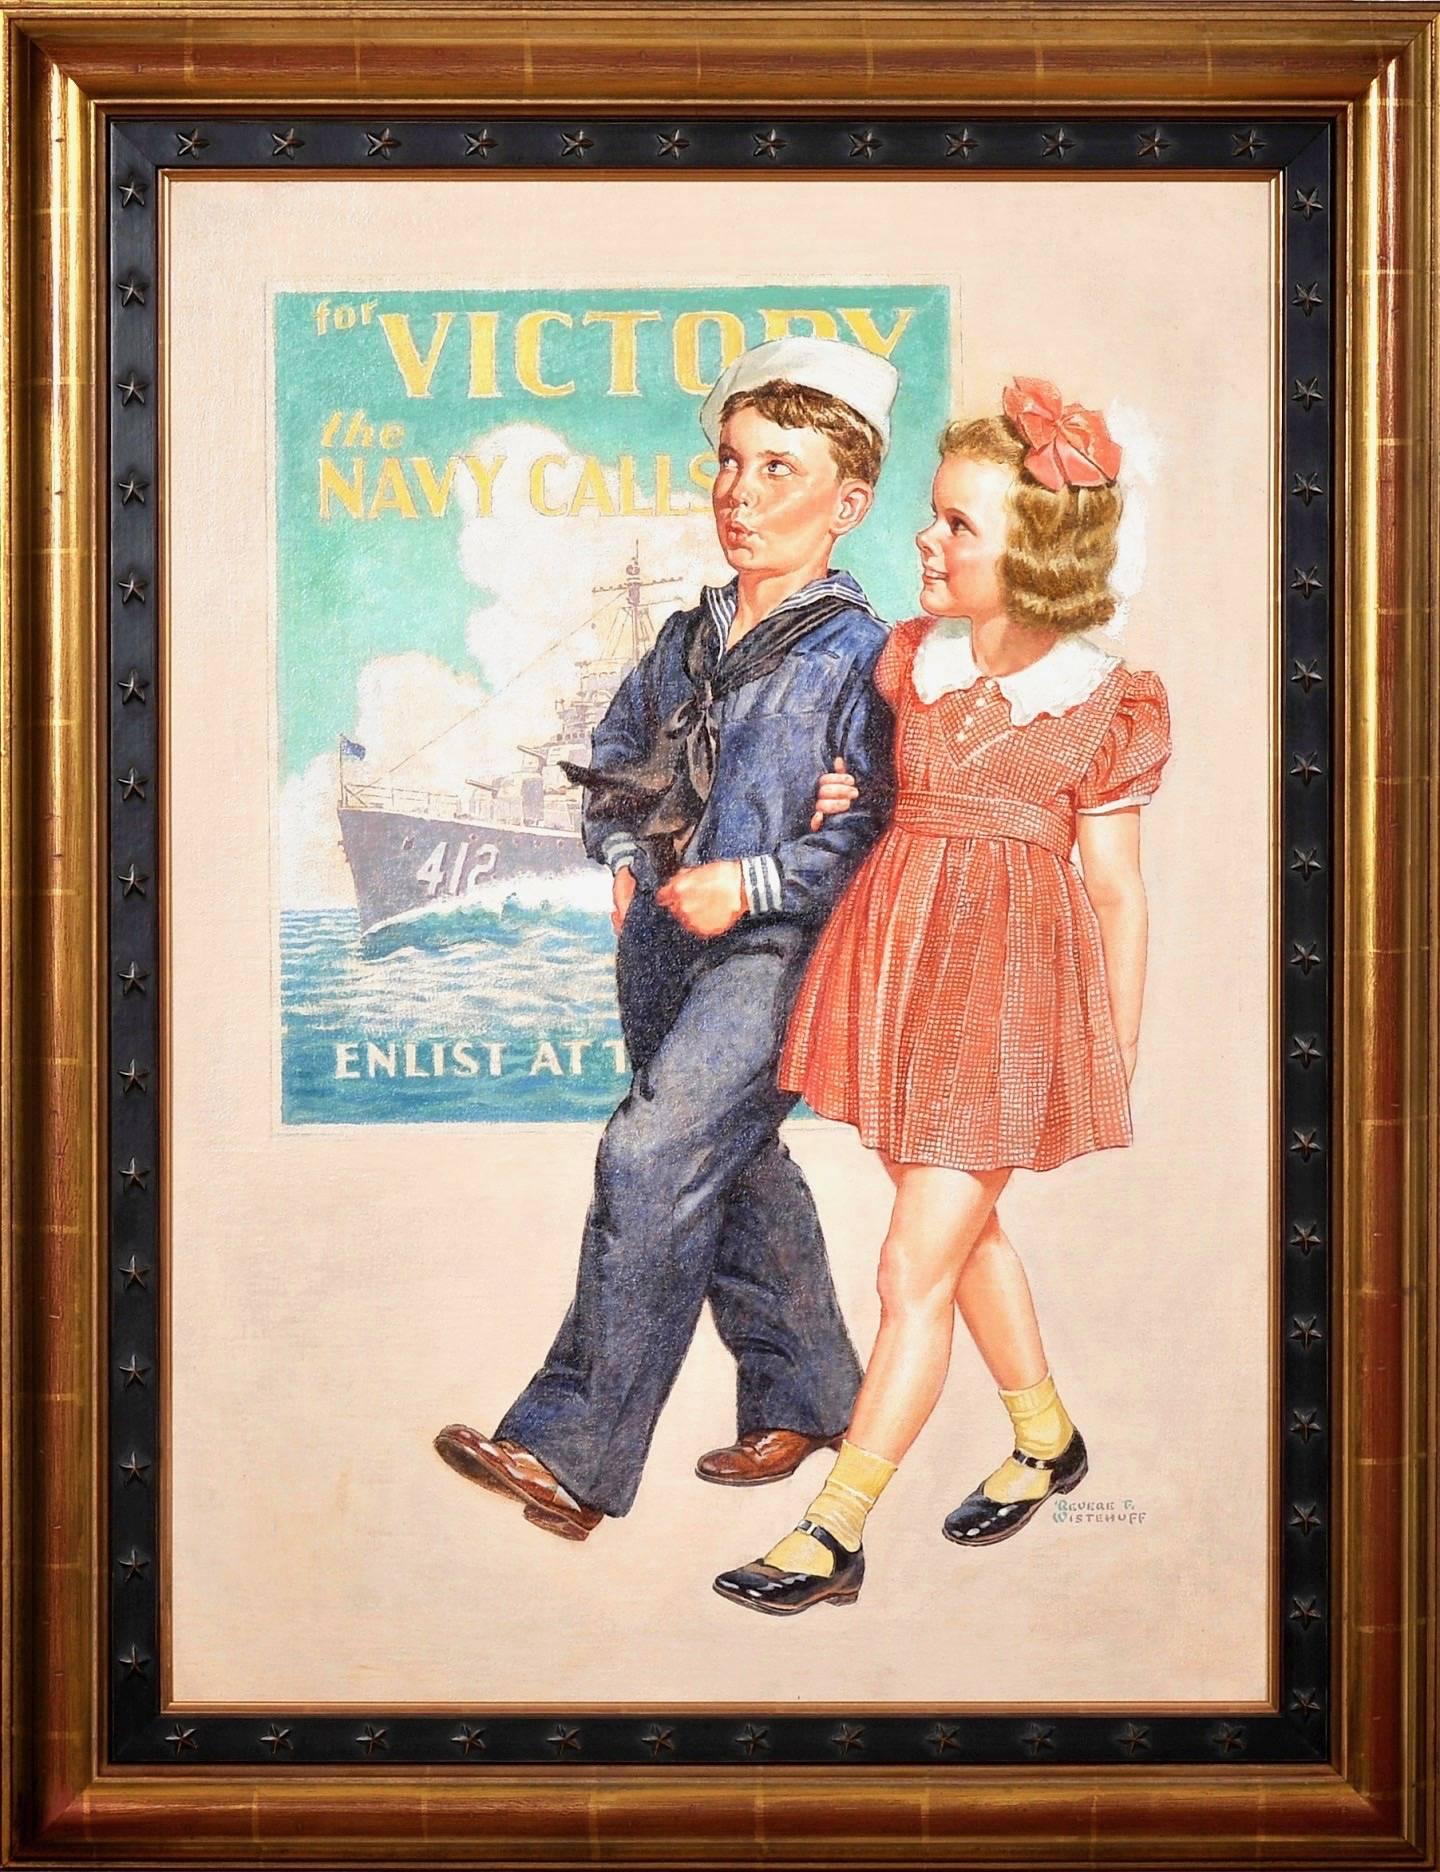 Pour la victoire, les appels de la marine - Autres styles artistiques Painting par Revere Wistehuff